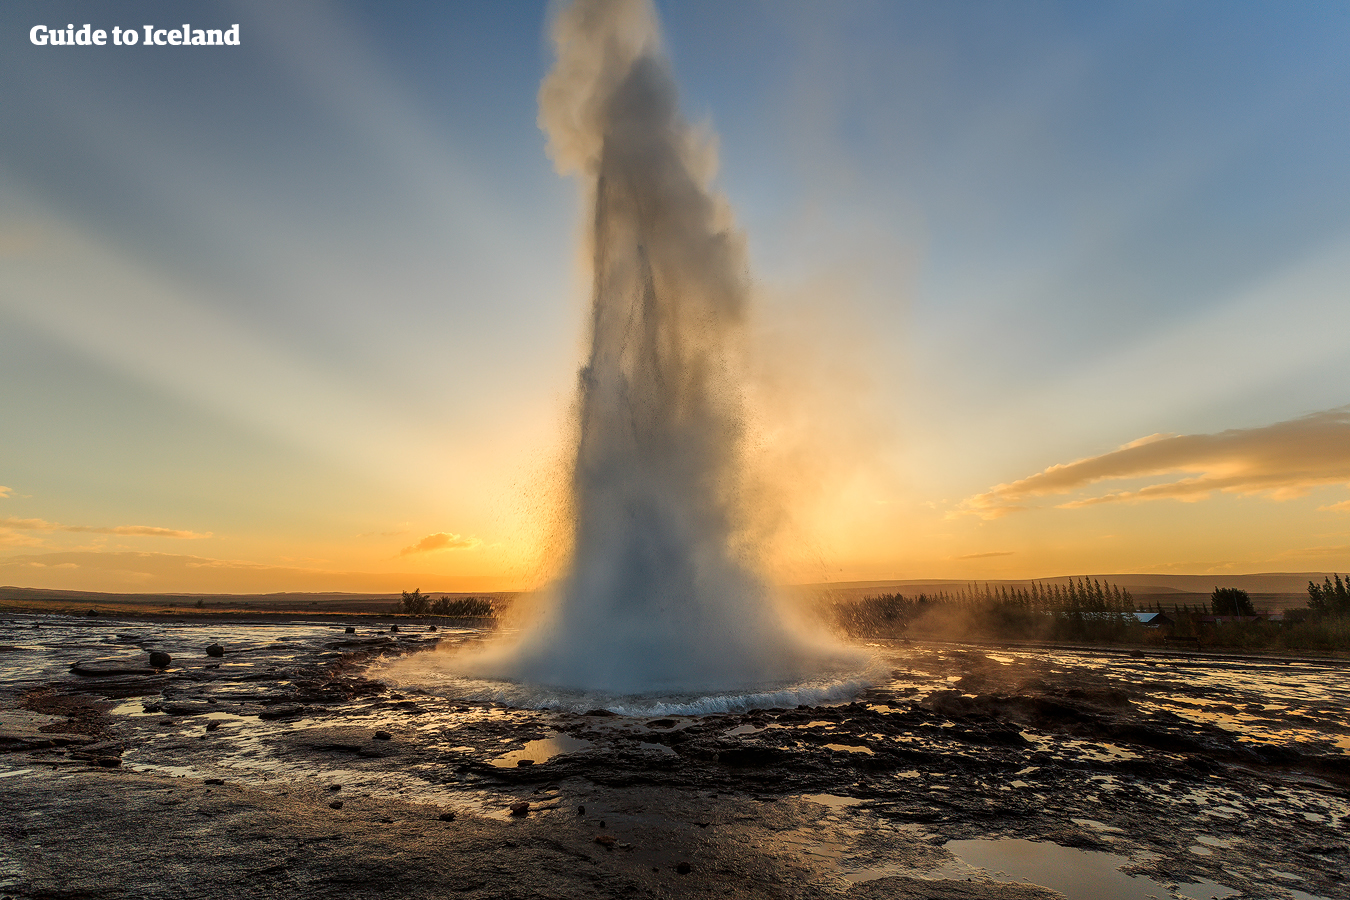 アイスランドは地熱活動が活発で、ゲイシール地熱地帯